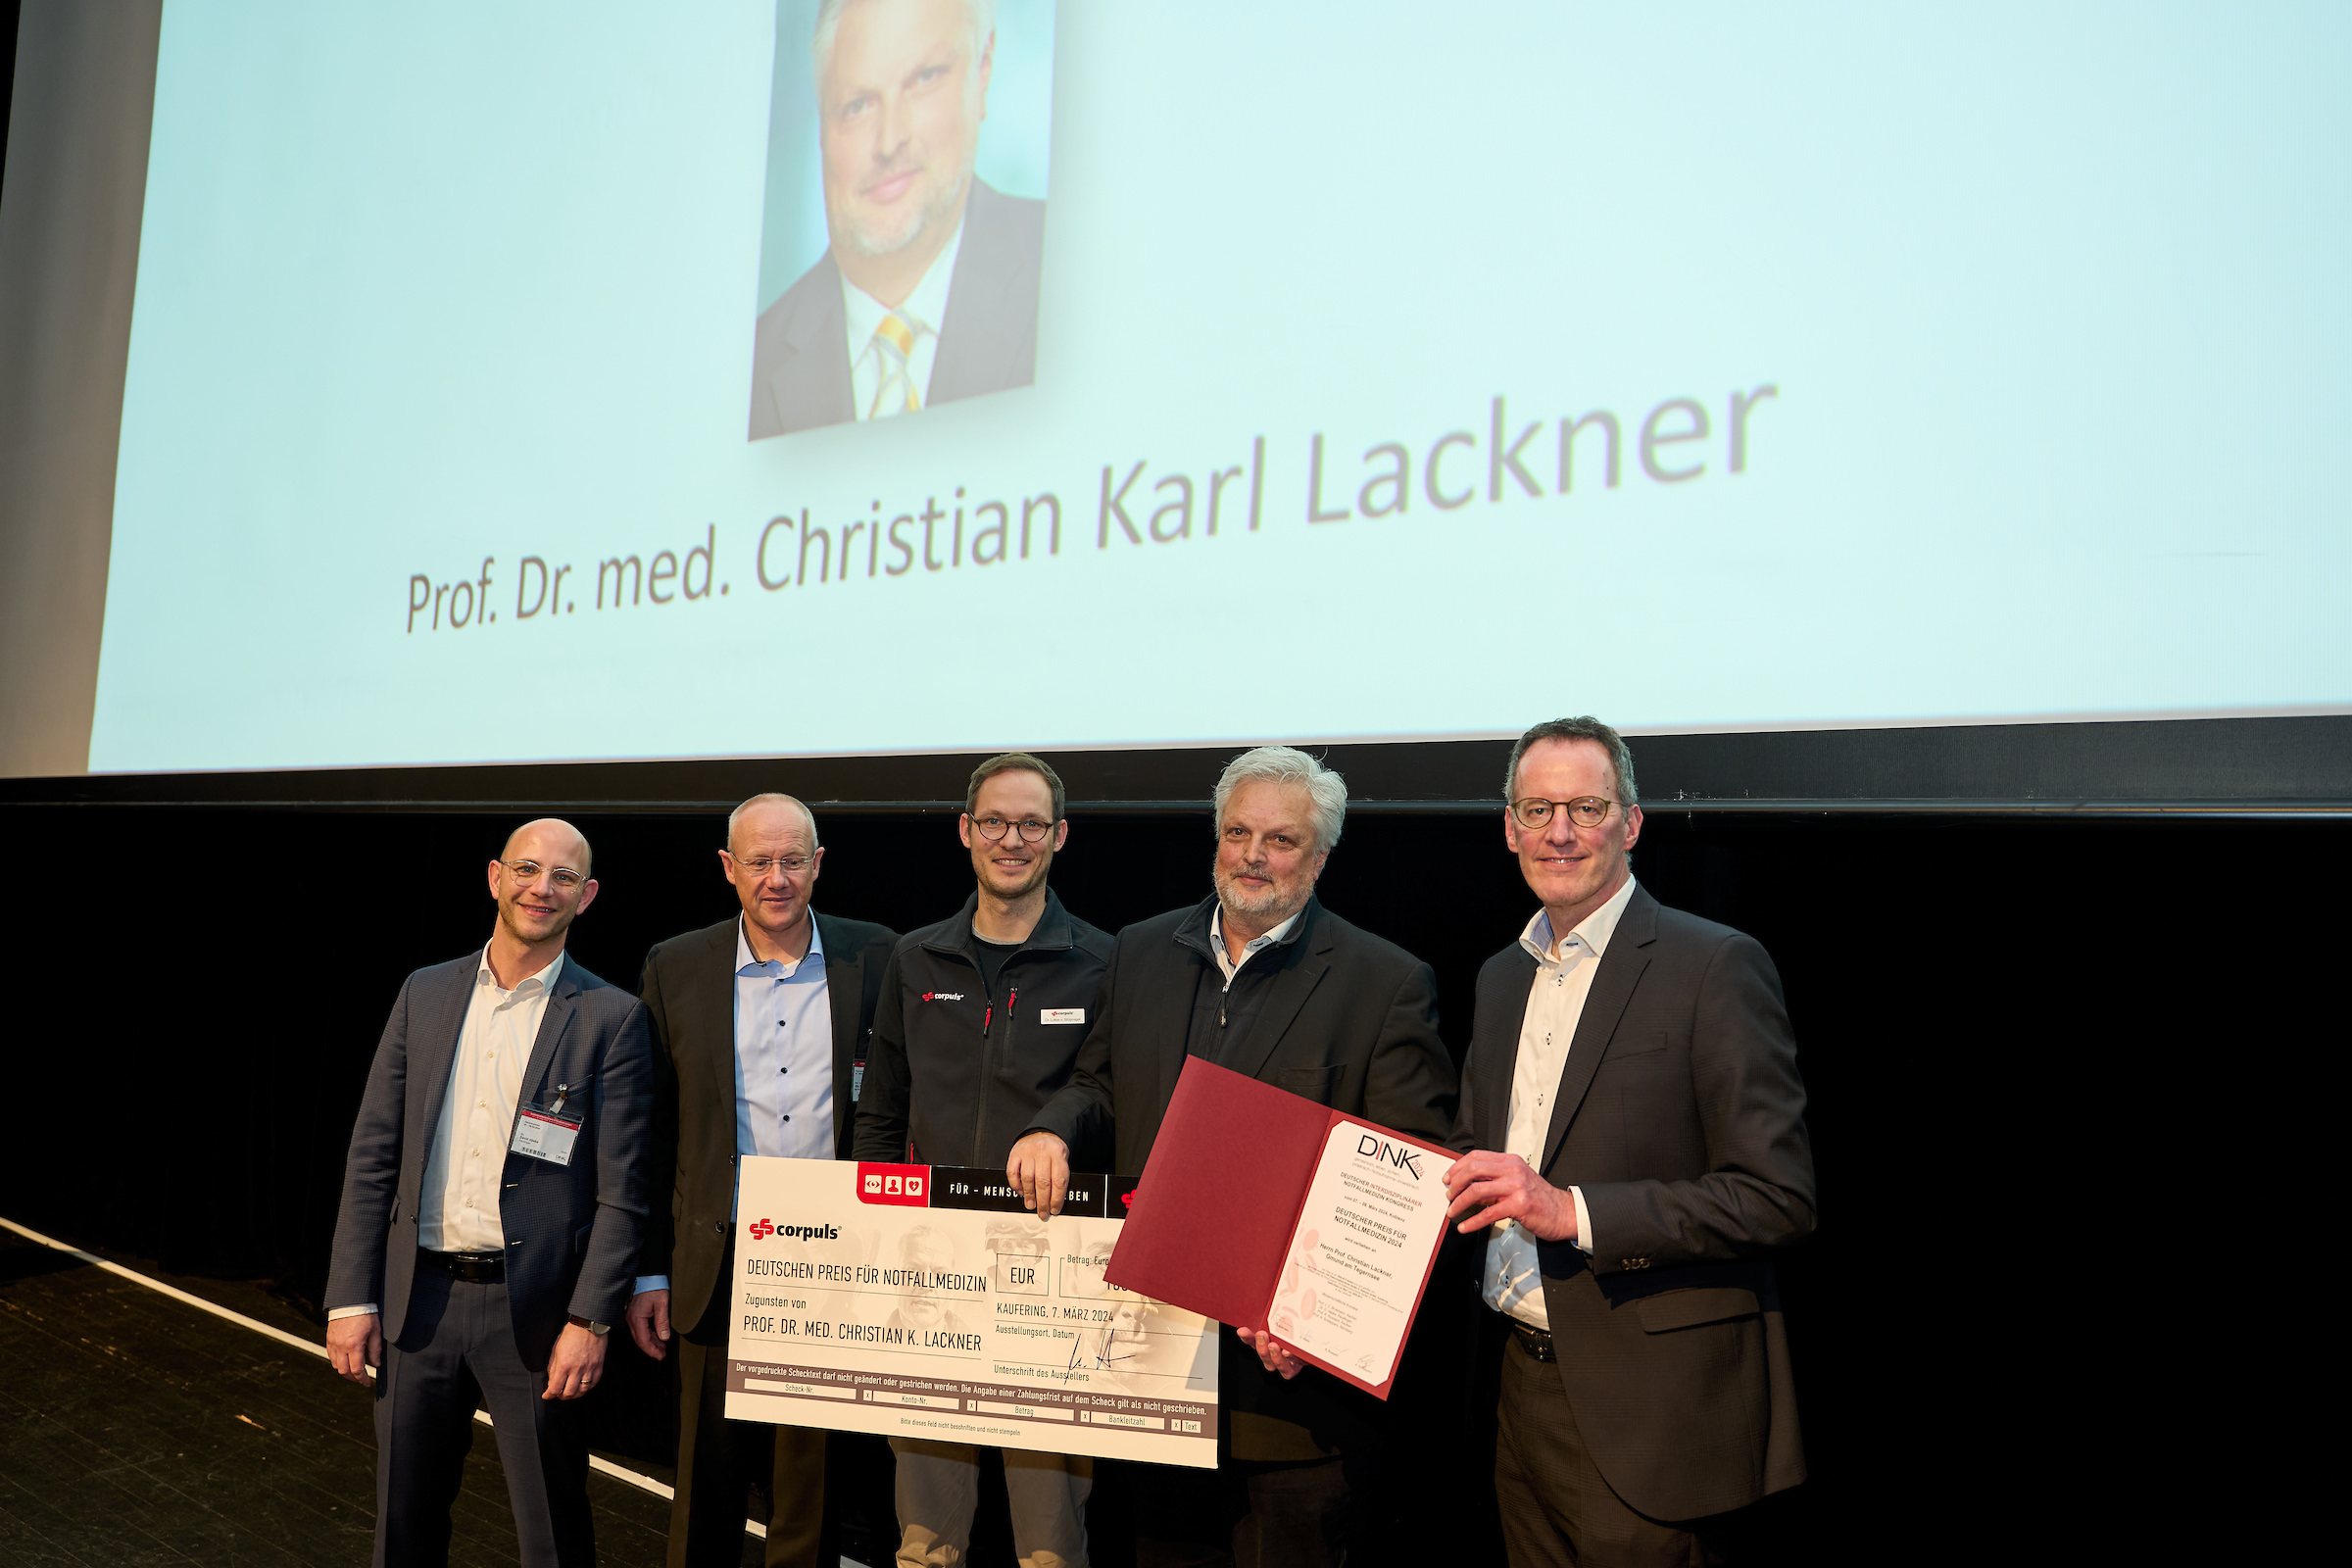 Prof. Dr. med. Christian Karl Lackner